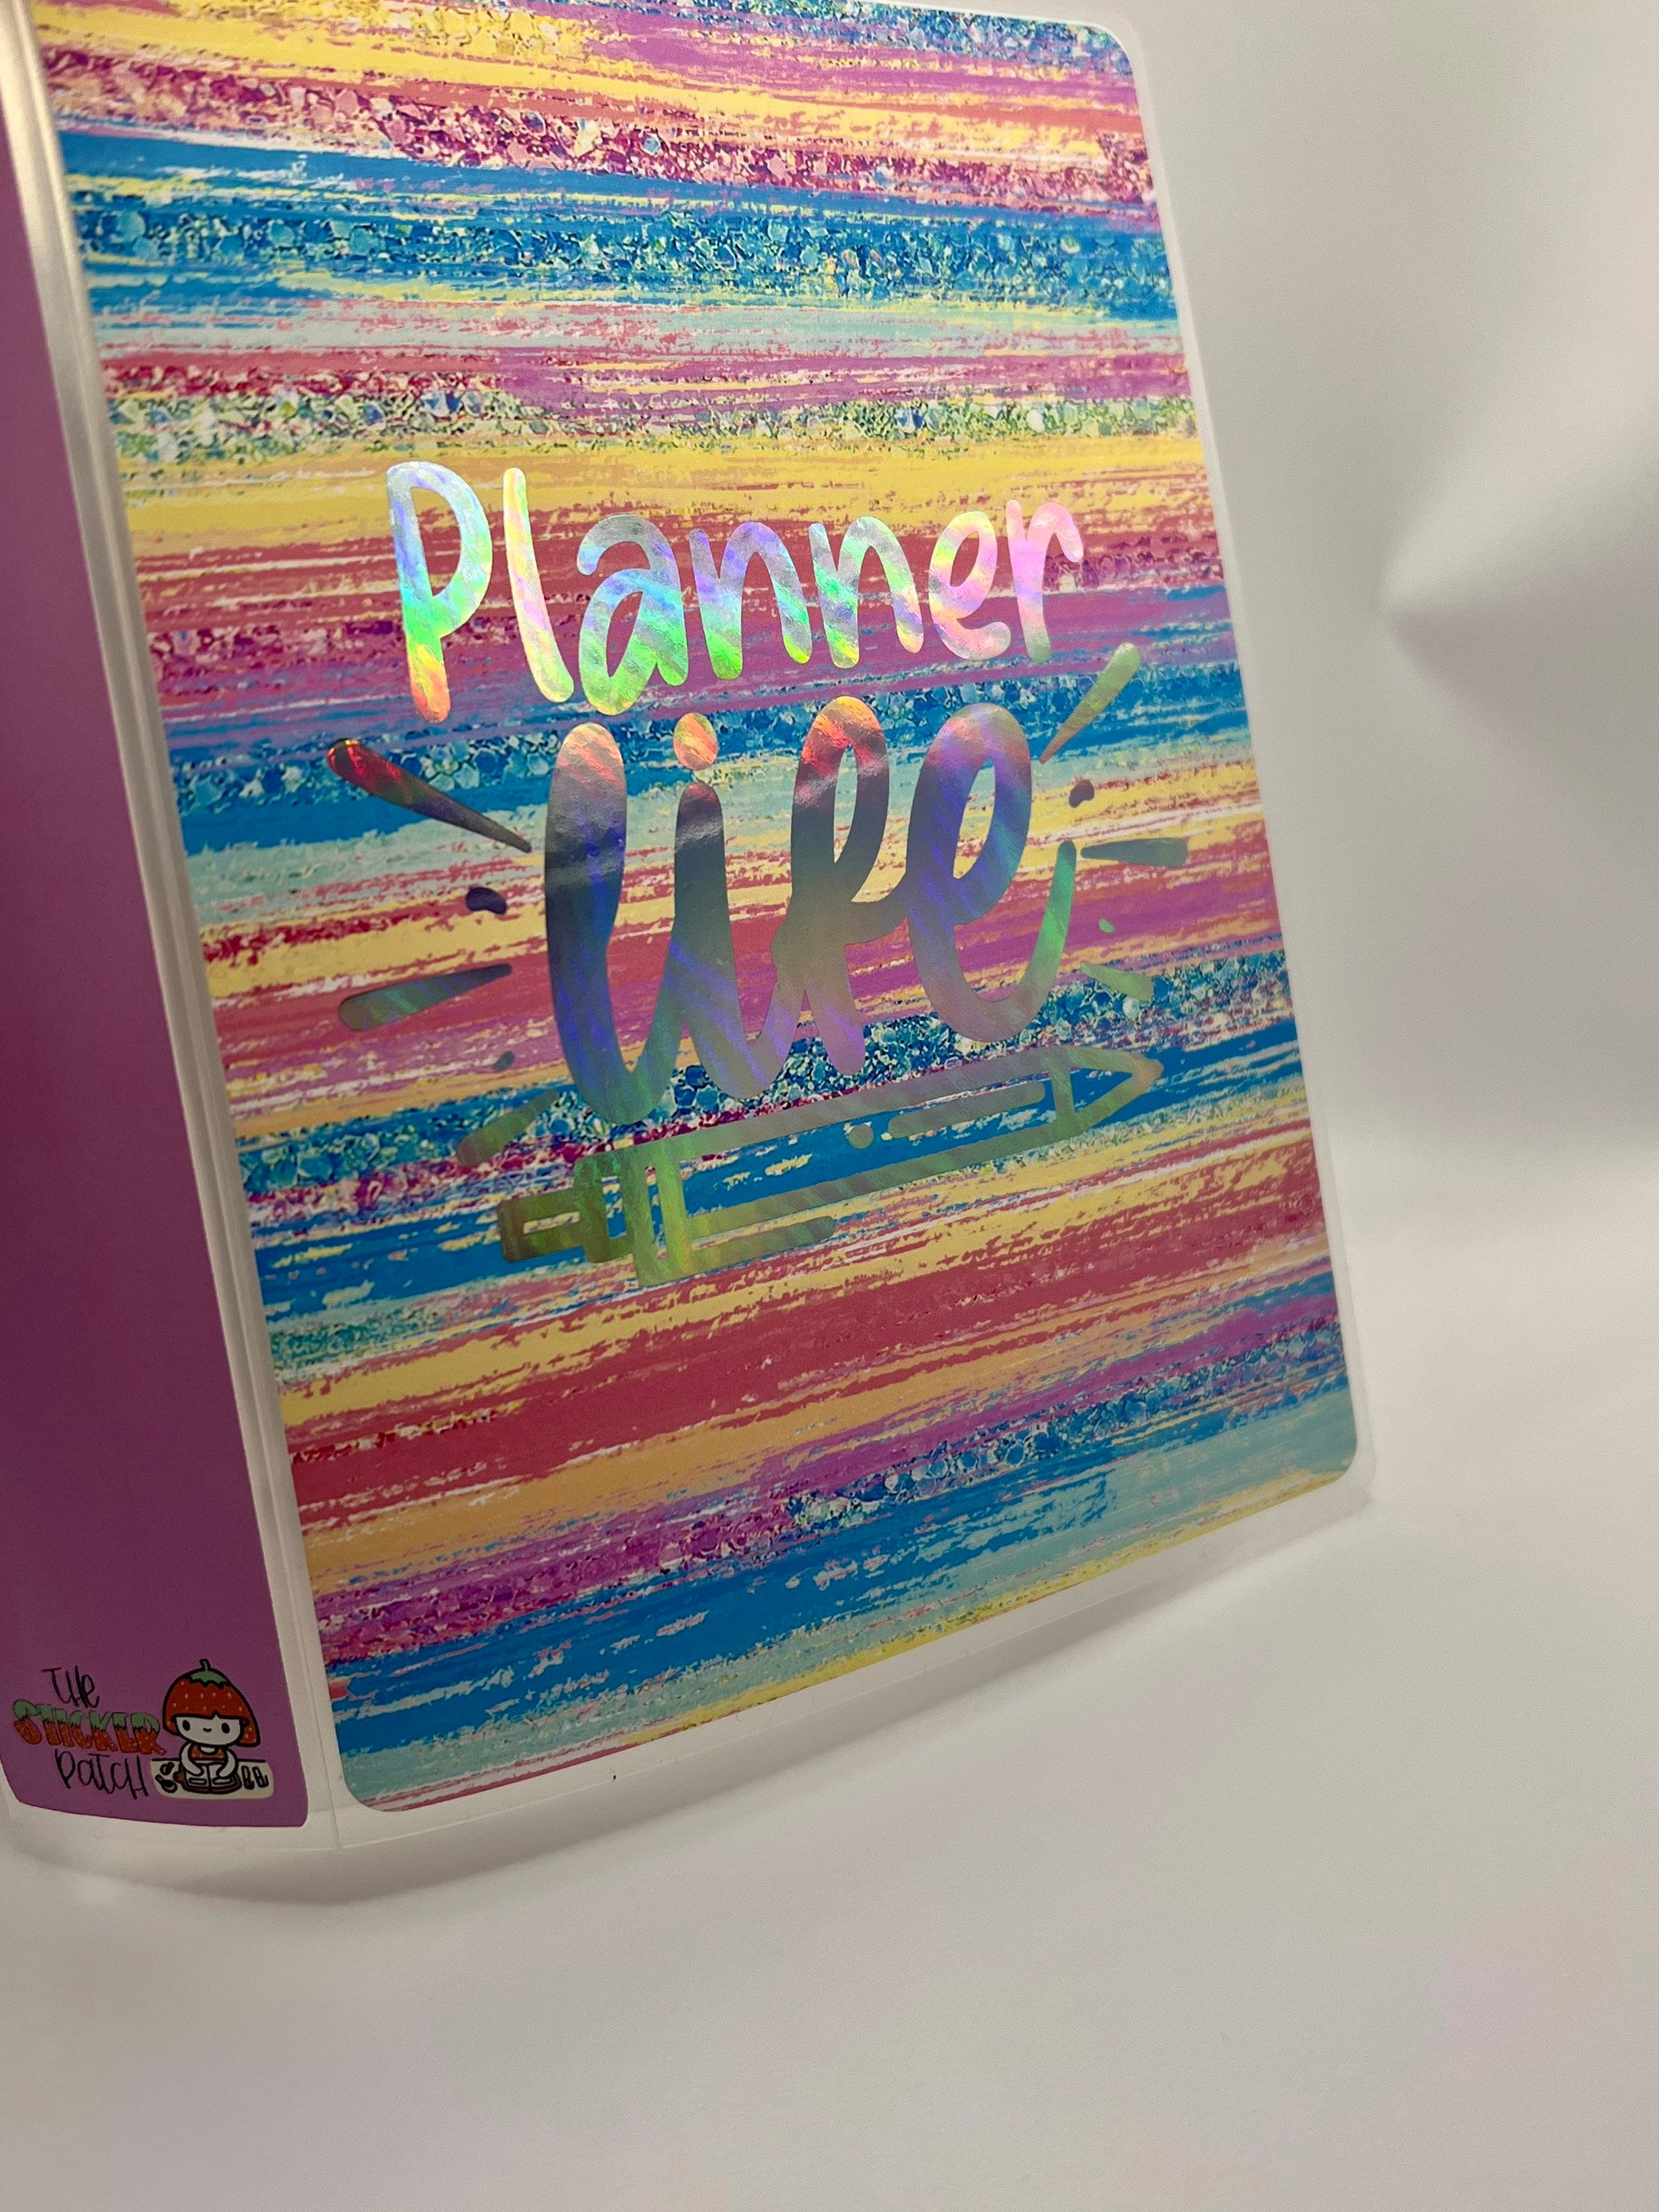 1-Pocket Interchangeable Disc Storage Album For 5x7-6x8 Planner Sticke